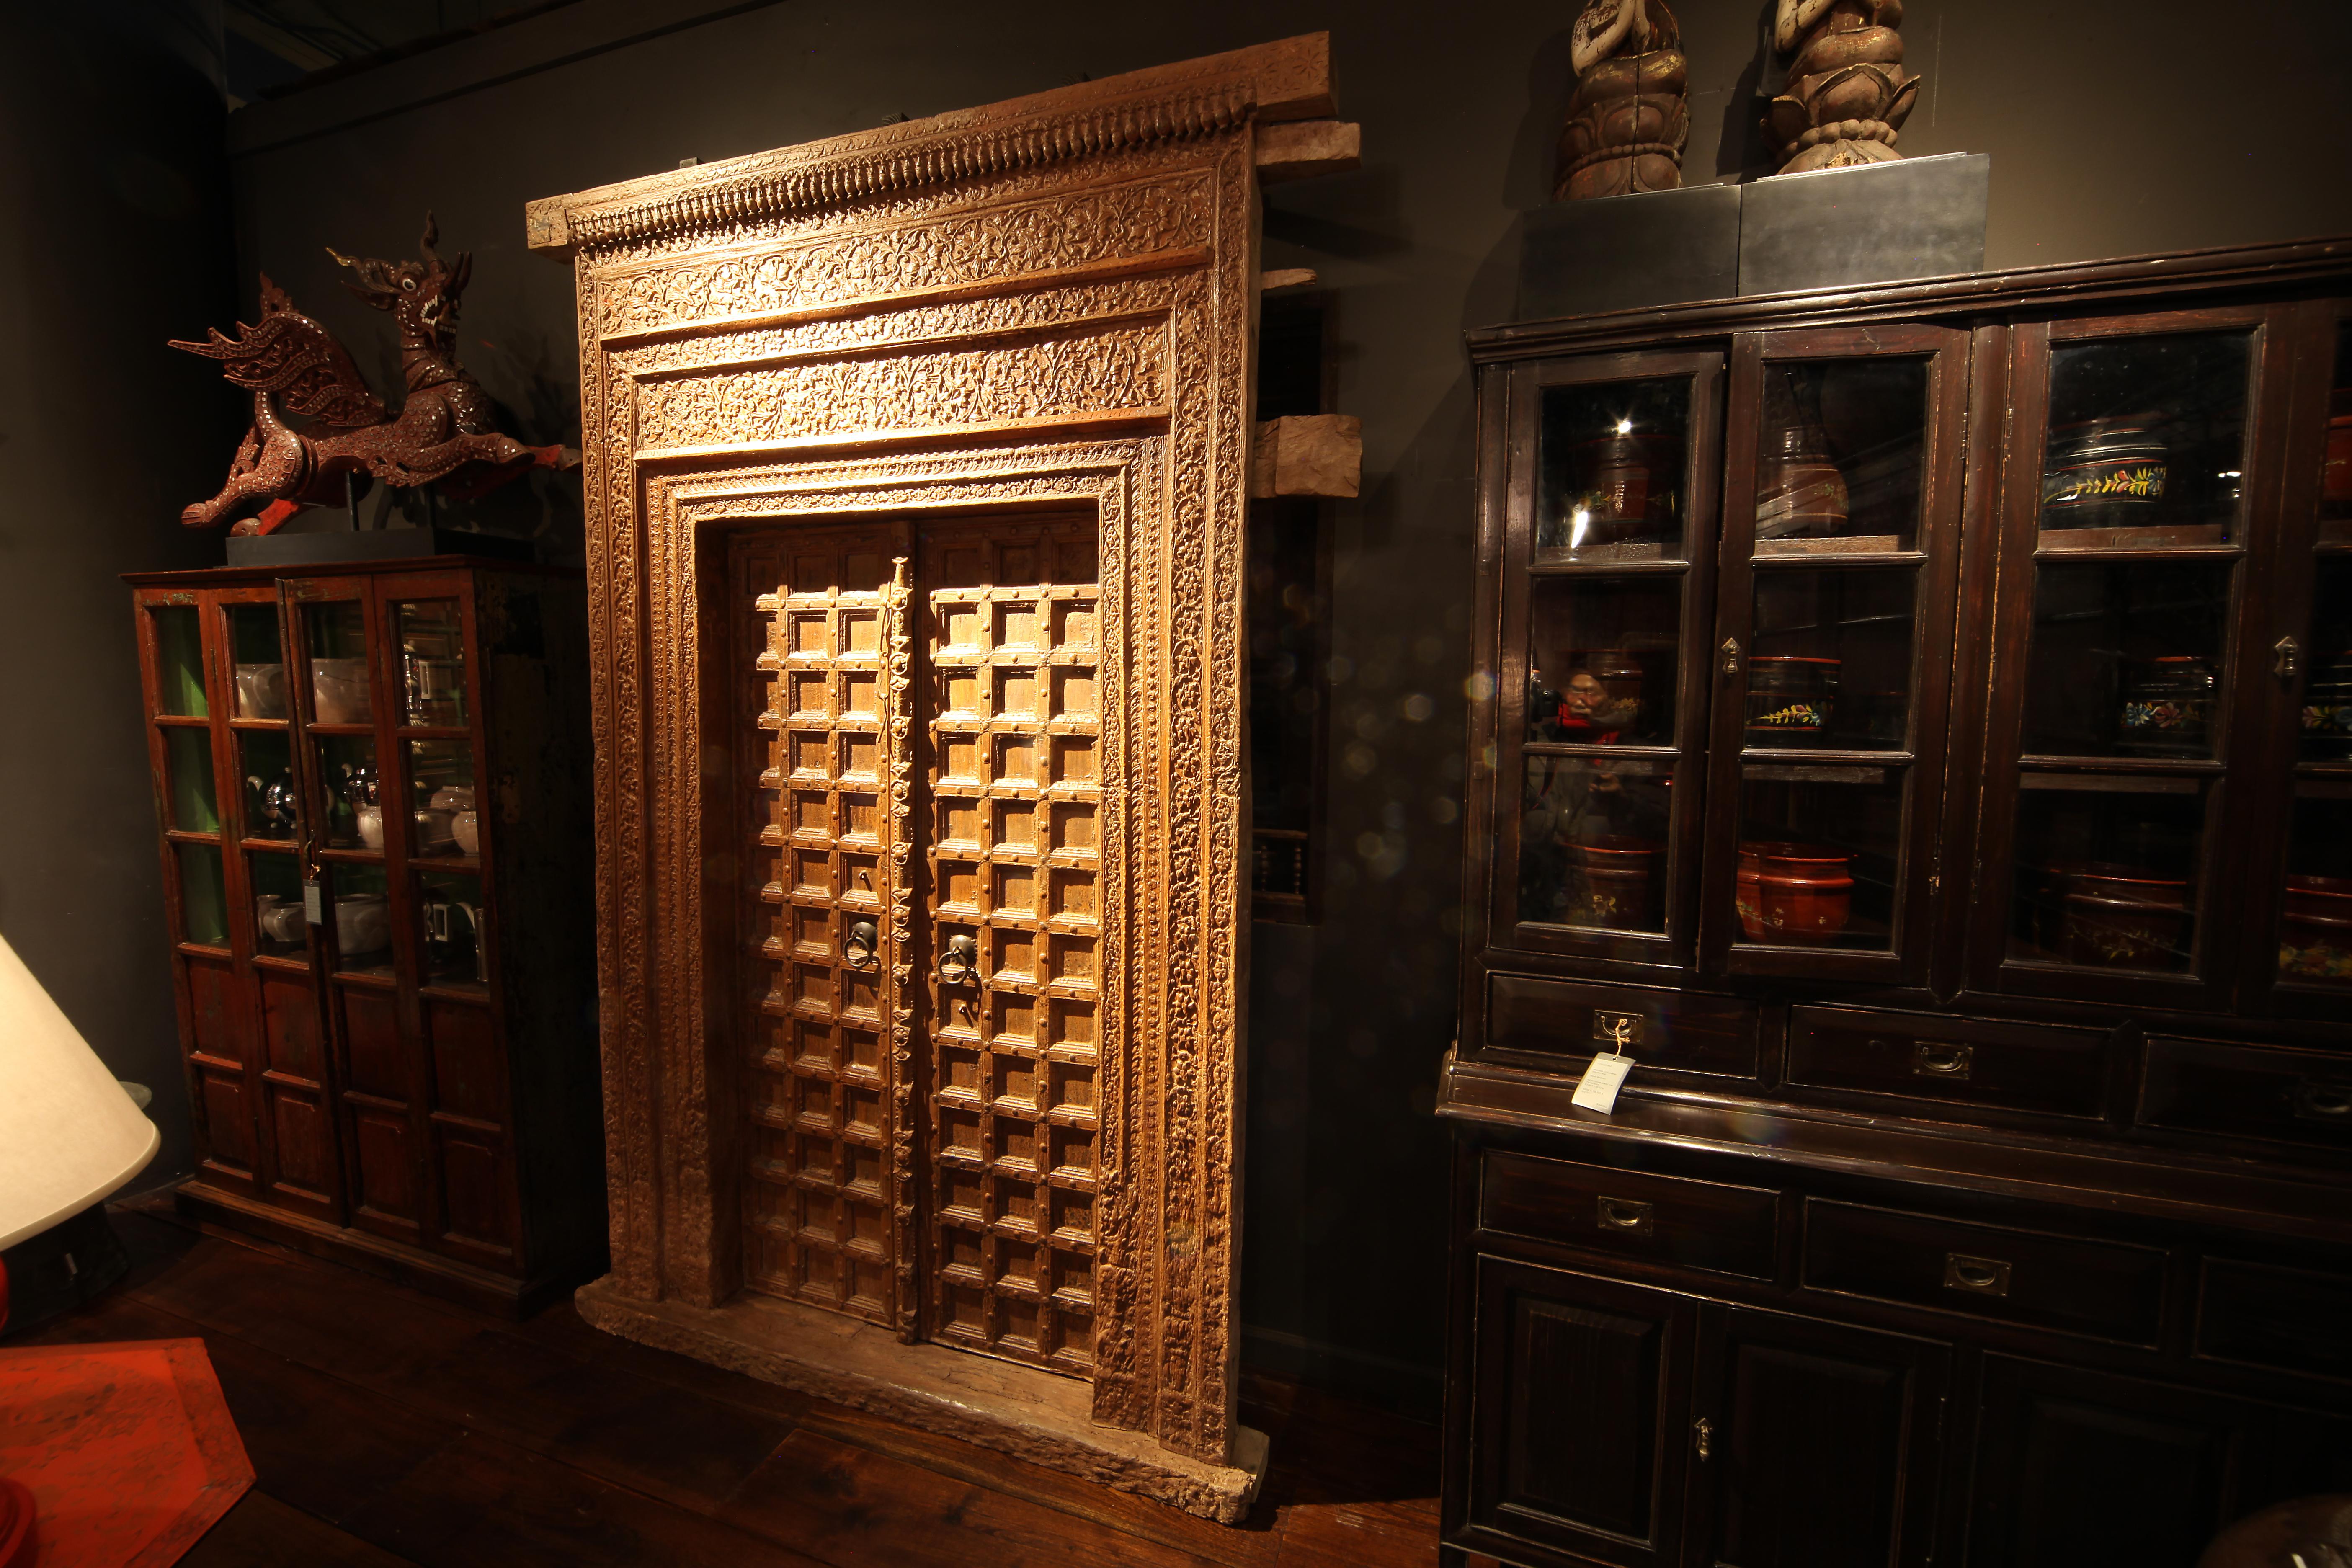 Diese monumentale geschnitzte indische Eingangstür ist aus Chechum-Holz gefertigt und verfügt über einen beeindruckenden und komplizierten Türrahmen. Die Rahmenelemente unmittelbar neben den Türen sind jeweils aus einem großen Stück Holz geschnitzt,